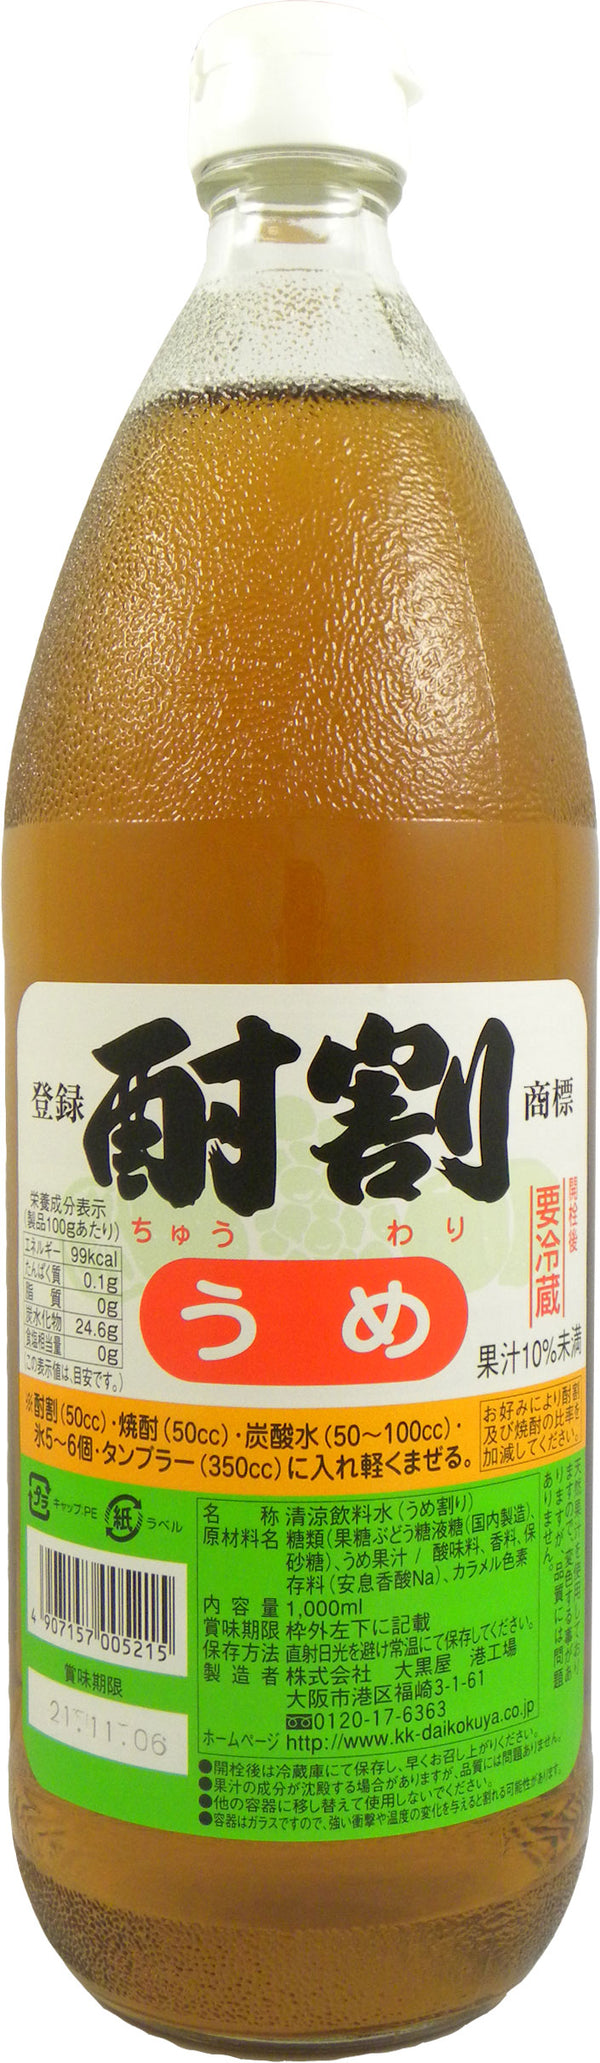 Daikokuya Chuwari Ume 1L Bottle Syrup for Commercial Use